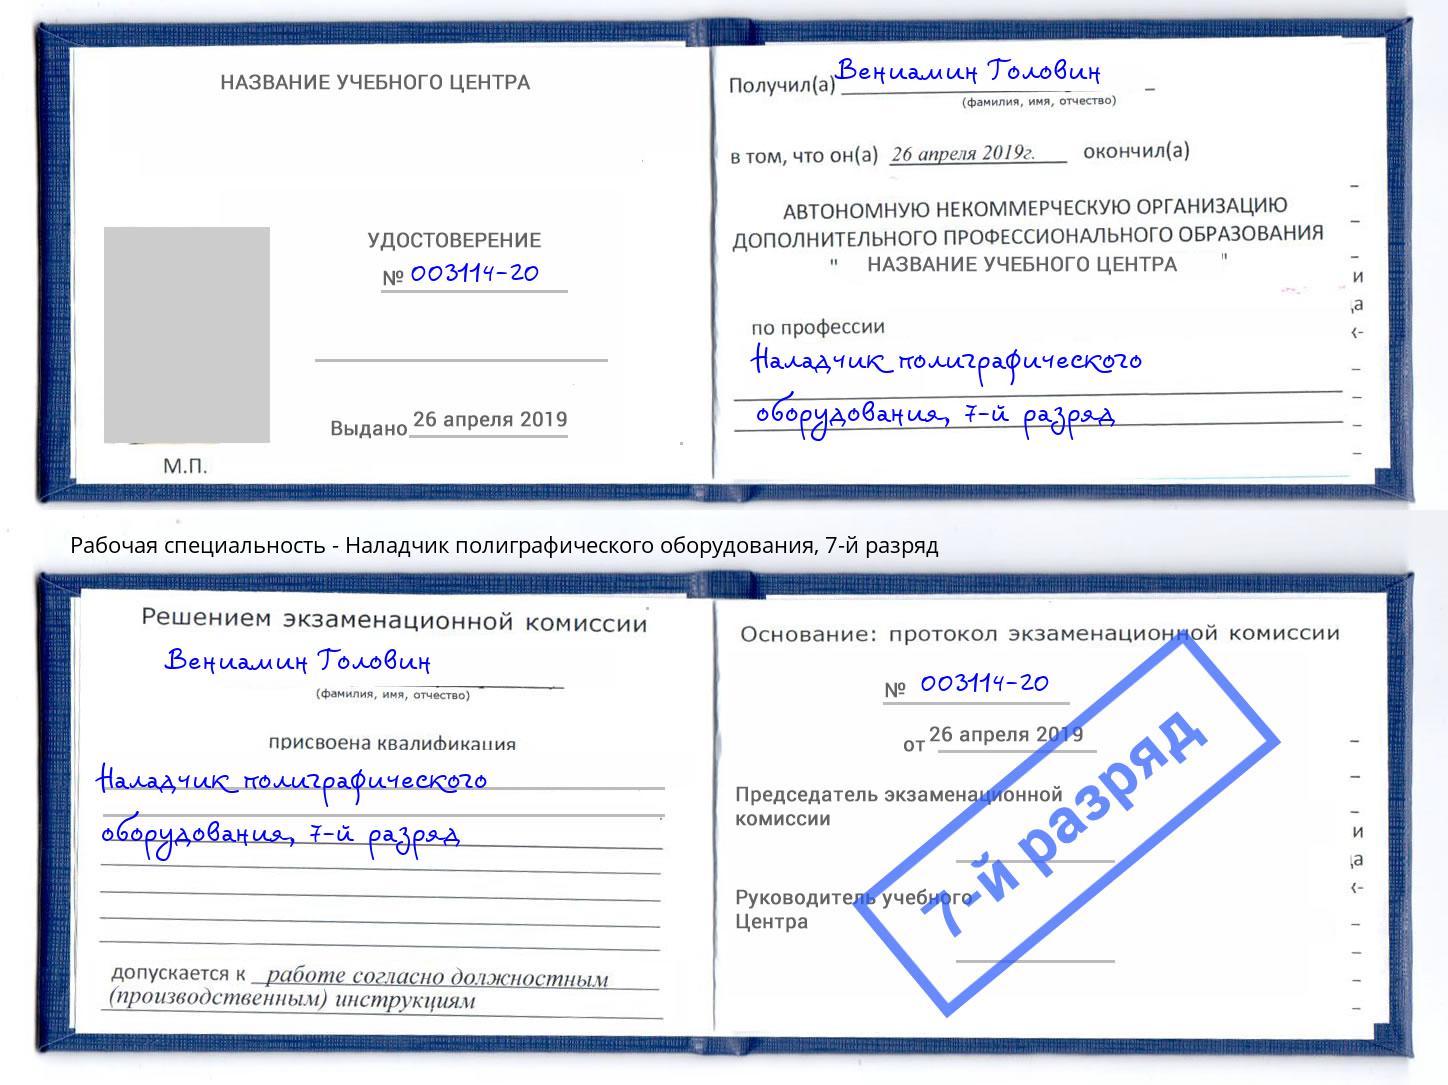 корочка 7-й разряд Наладчик полиграфического оборудования Южно-Сахалинск